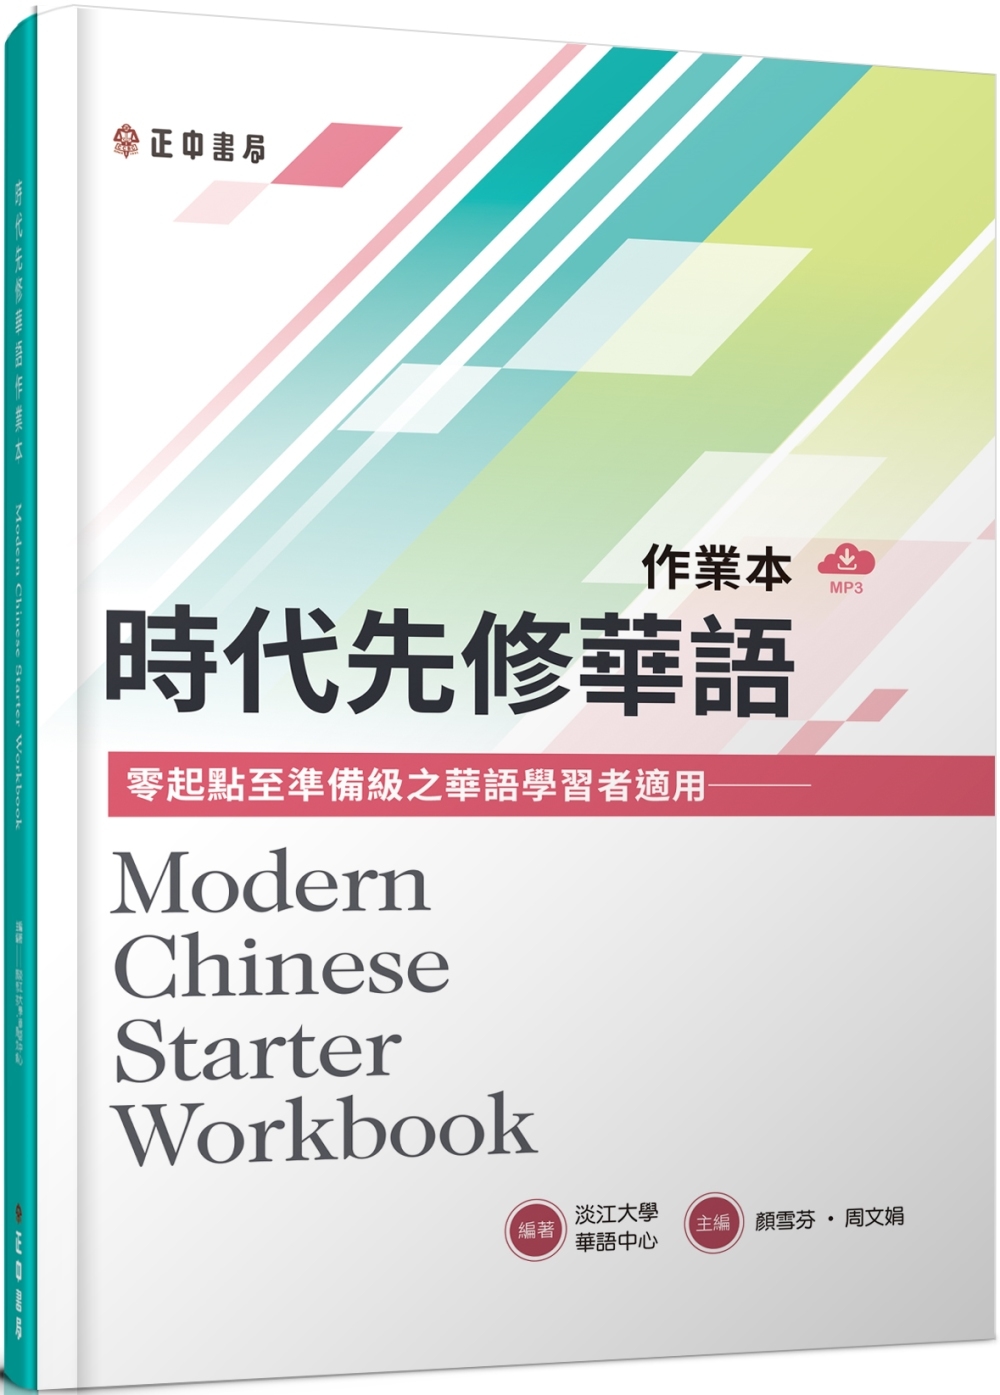 時代先修華語作業本(可下載雲端MP3) Modern Chinese Starter Workbook